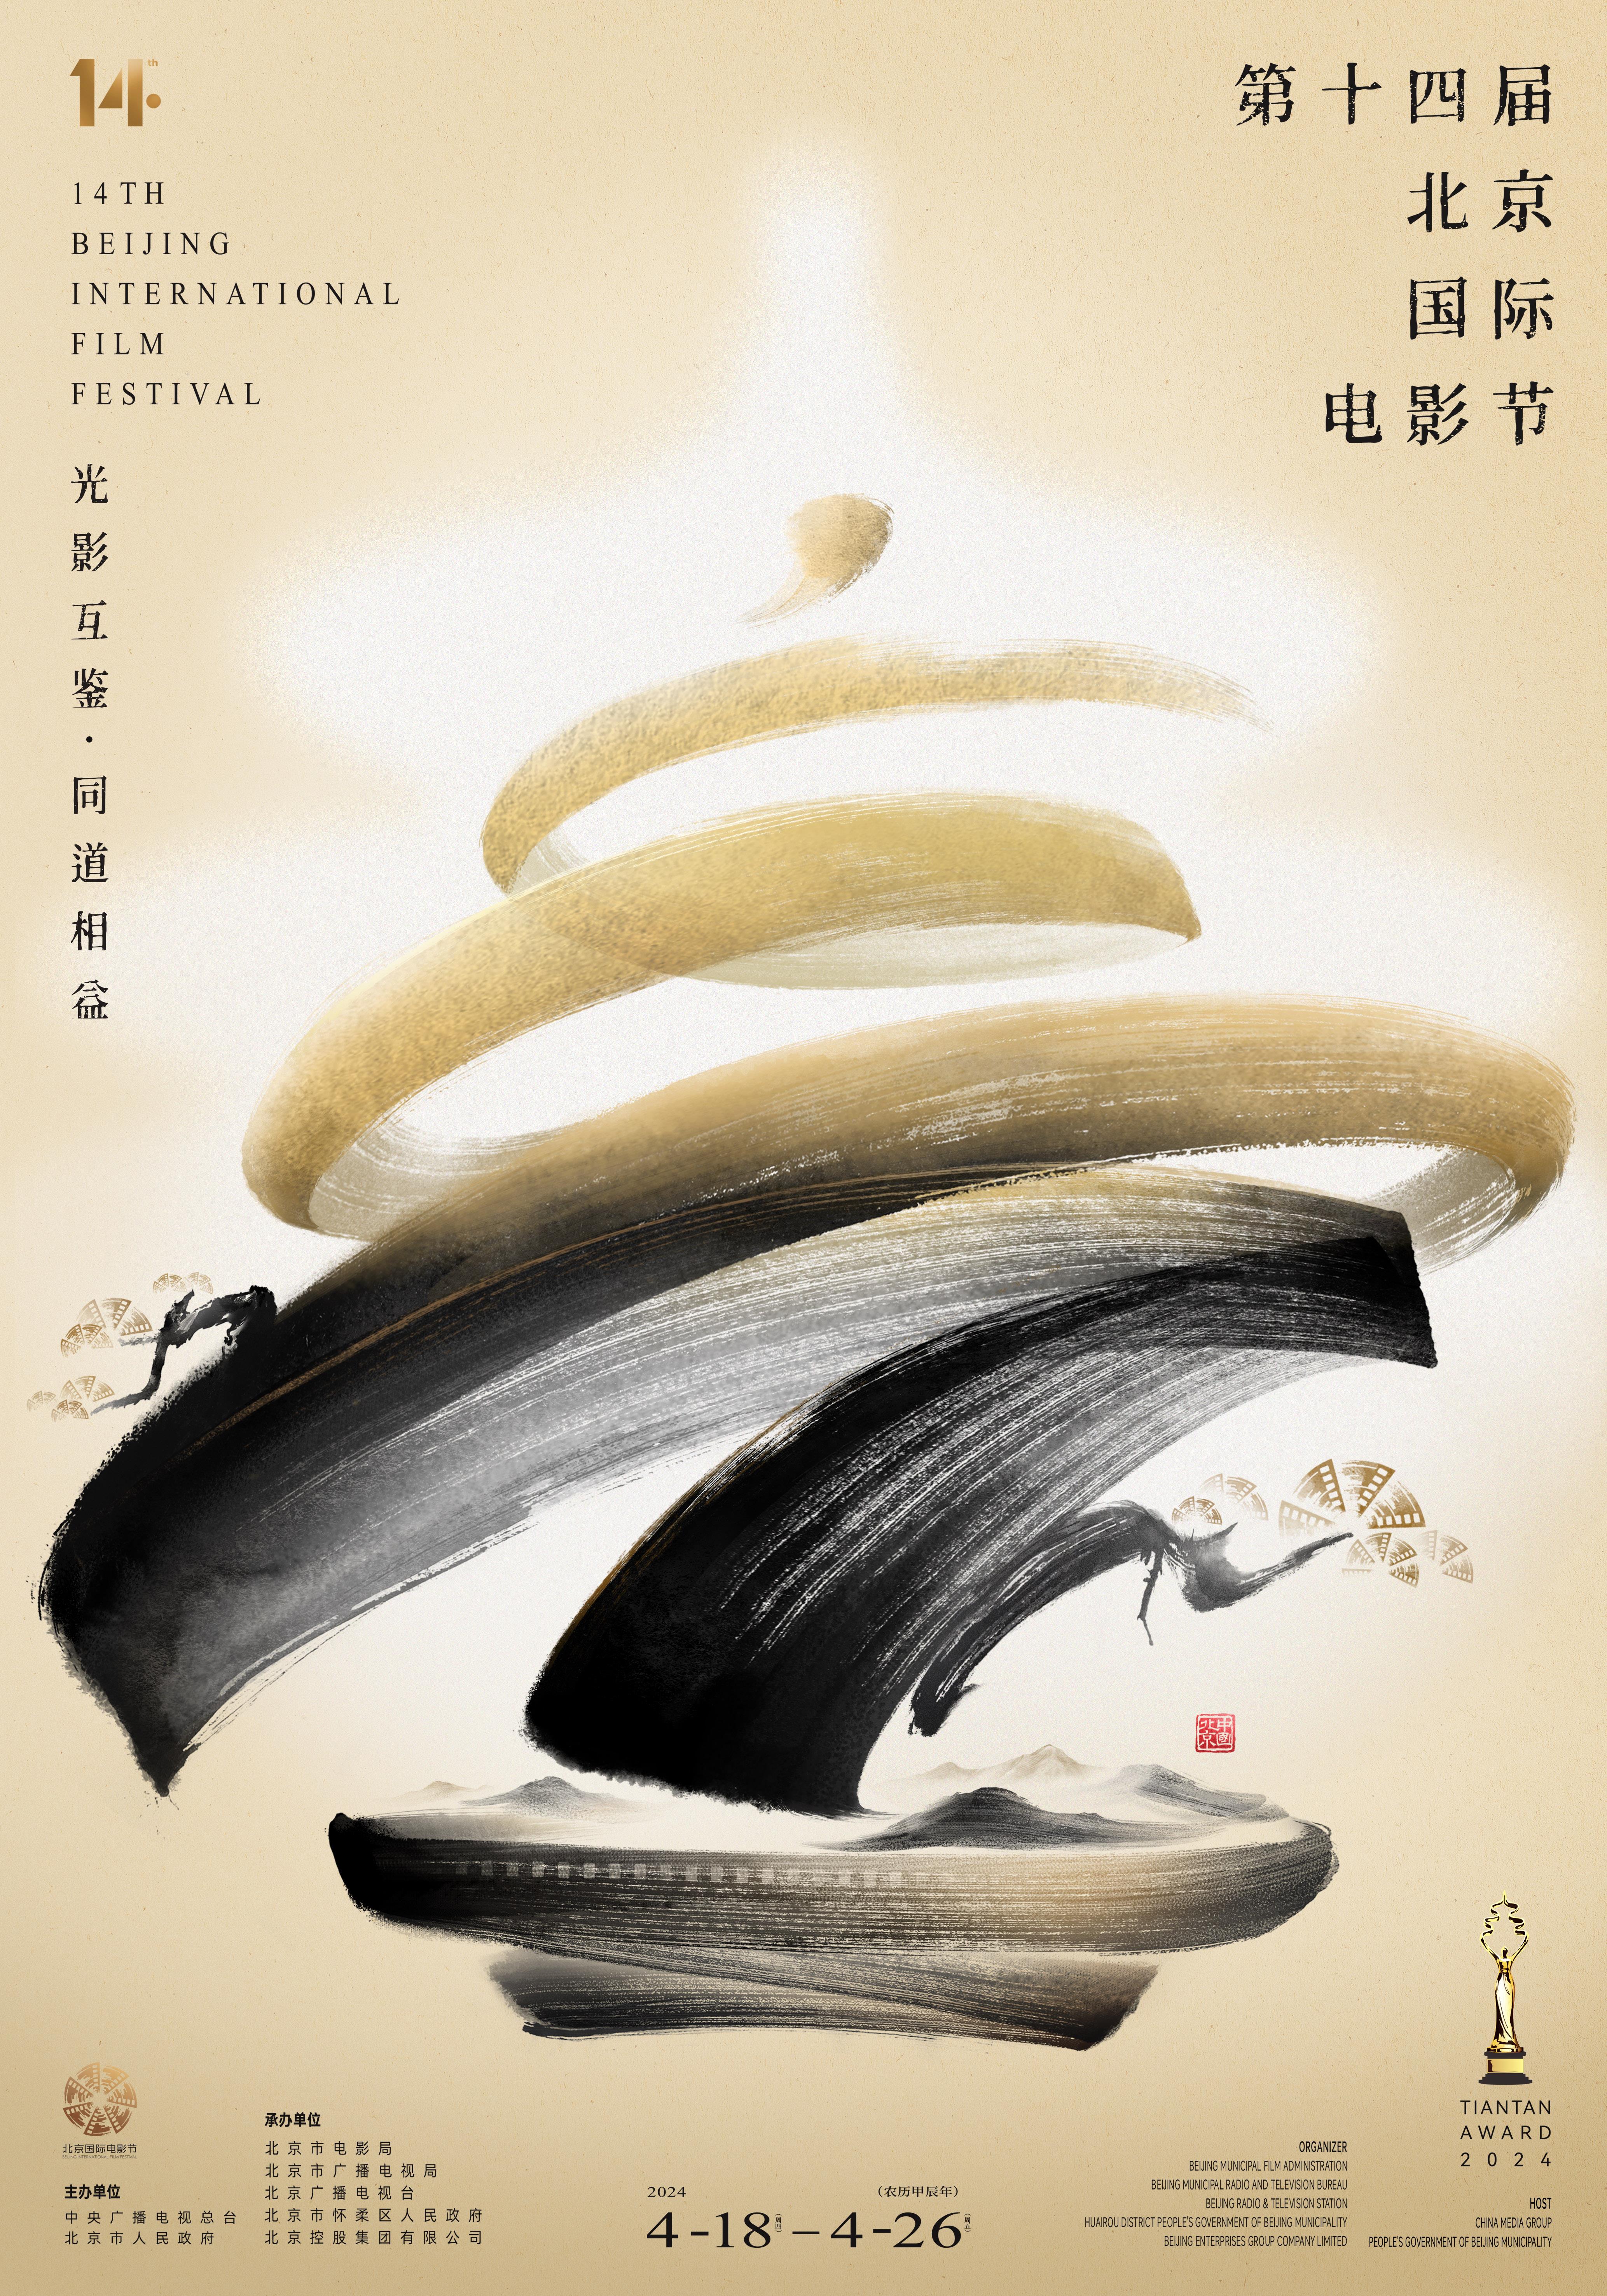 第十四届北京国际电影节4月18日开幕 “天坛奖”评委和入围影片公布